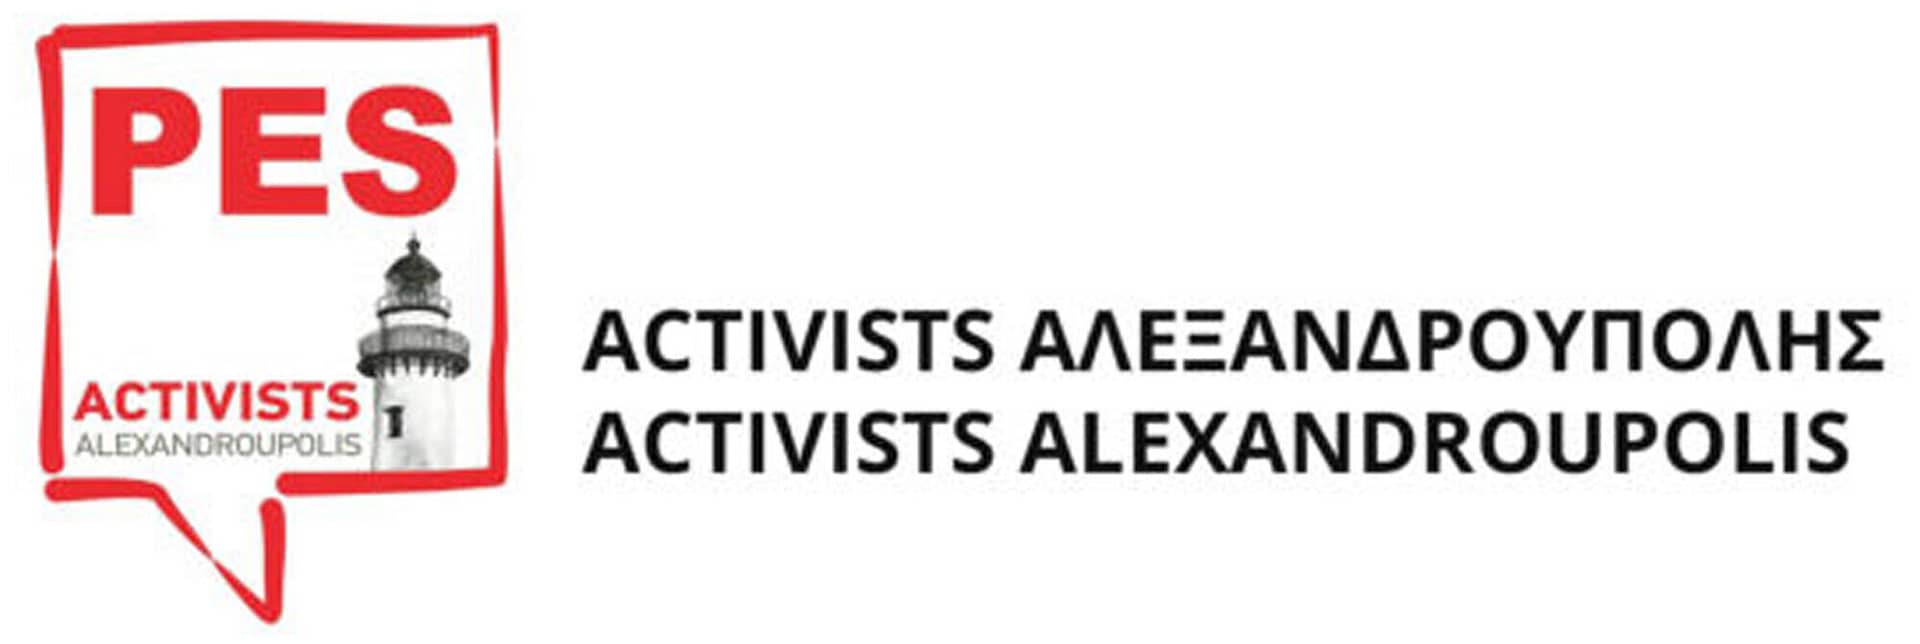 PES Activists Αλεξανδρούπολης